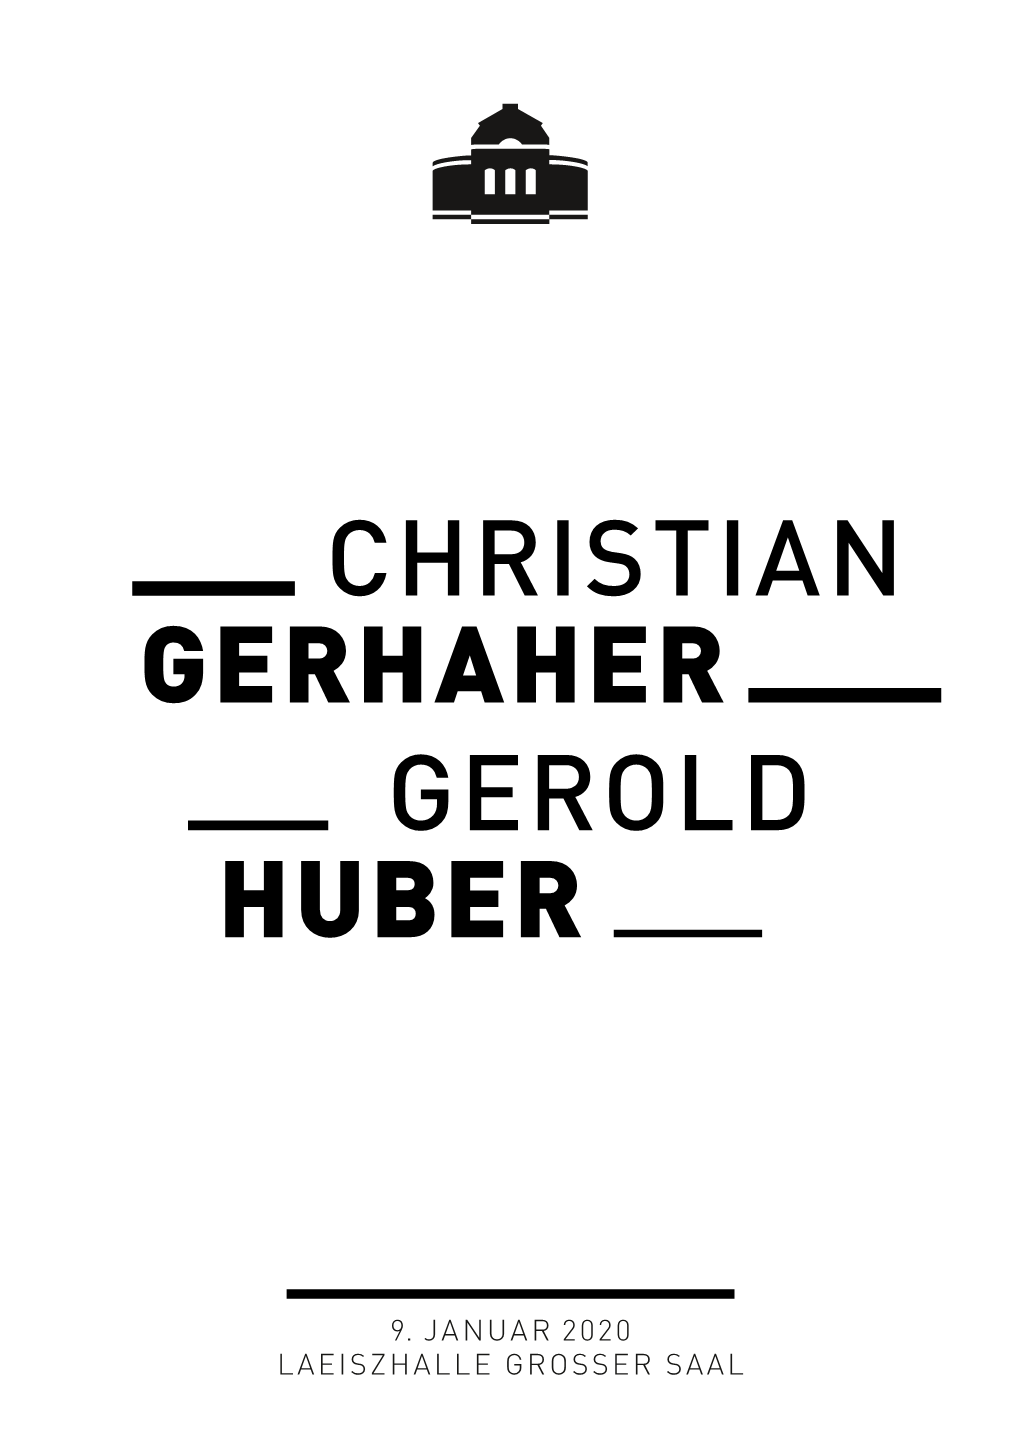 Gerhaher Huber